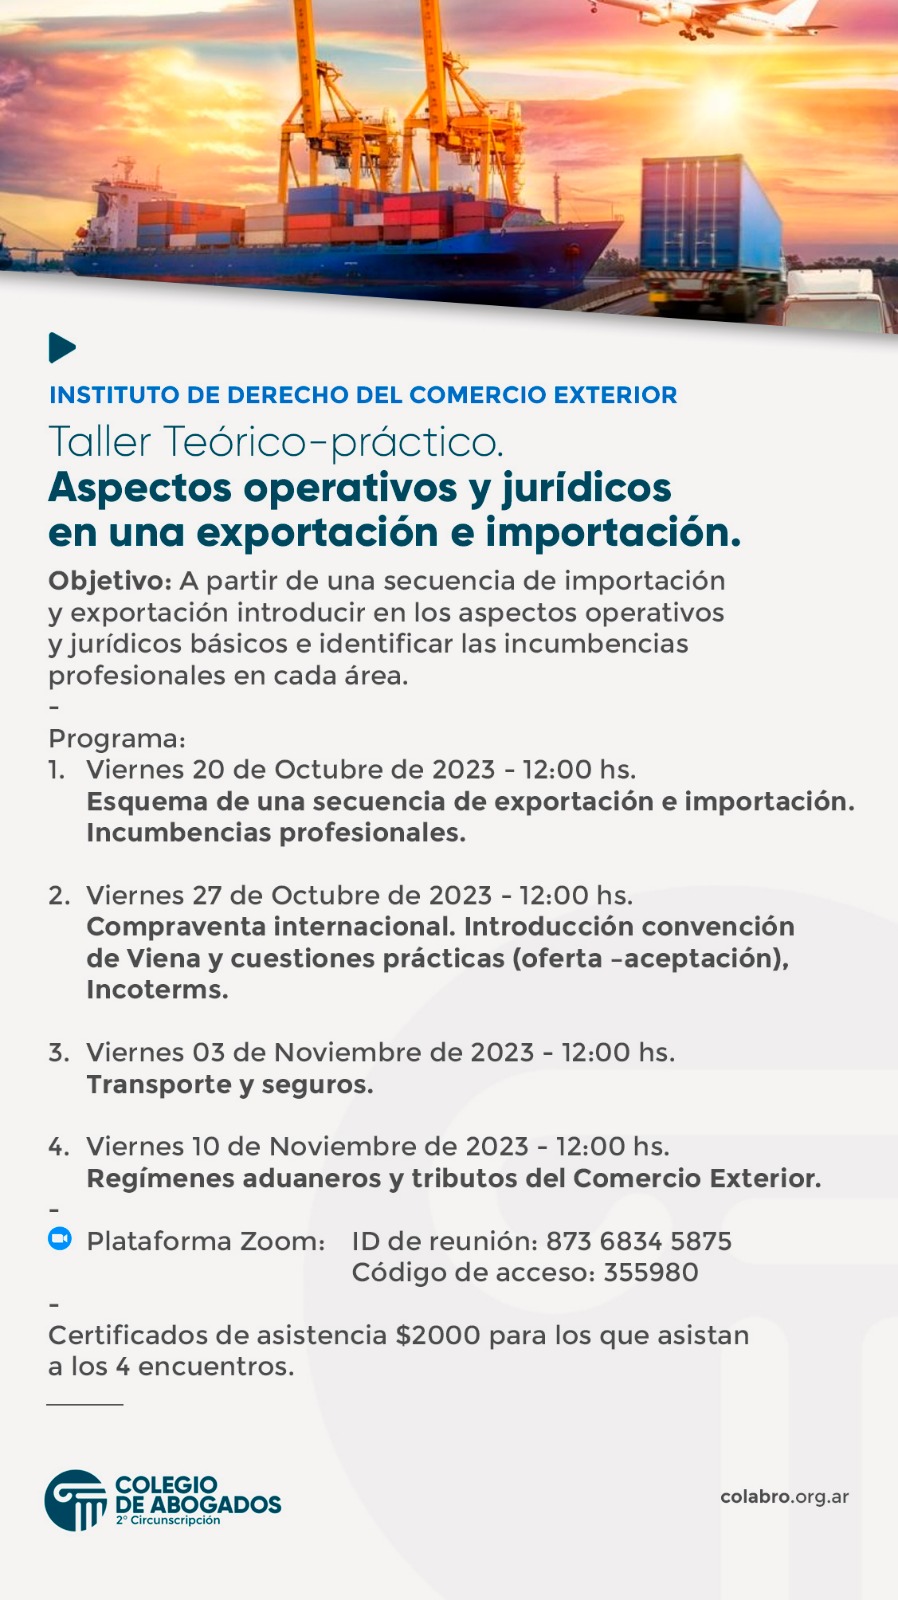 Taller Teórico- practico Aspectos operativos y jurídicos en una exportación e importación - 20/10/2023 - 27/10/2023 - 03/11/2023 - 10/11/2023